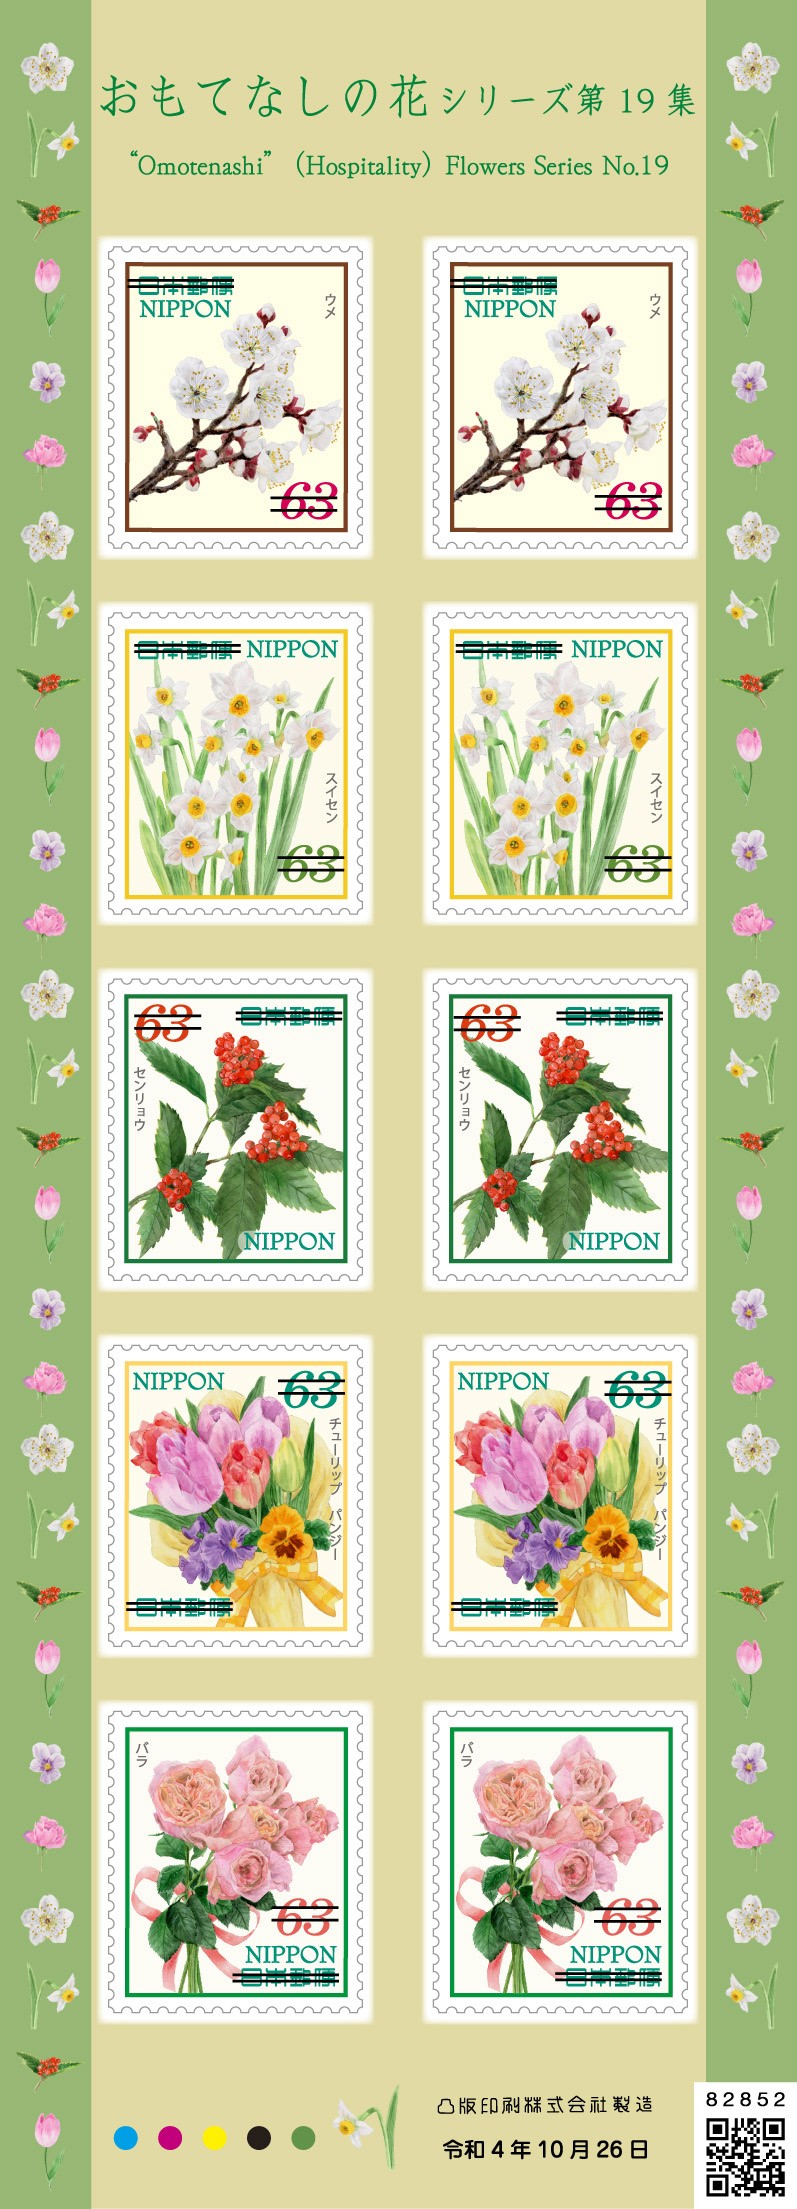 特殊切手「おもてなしの花シリーズ 第19集」の発行｜日本郵便のプレス